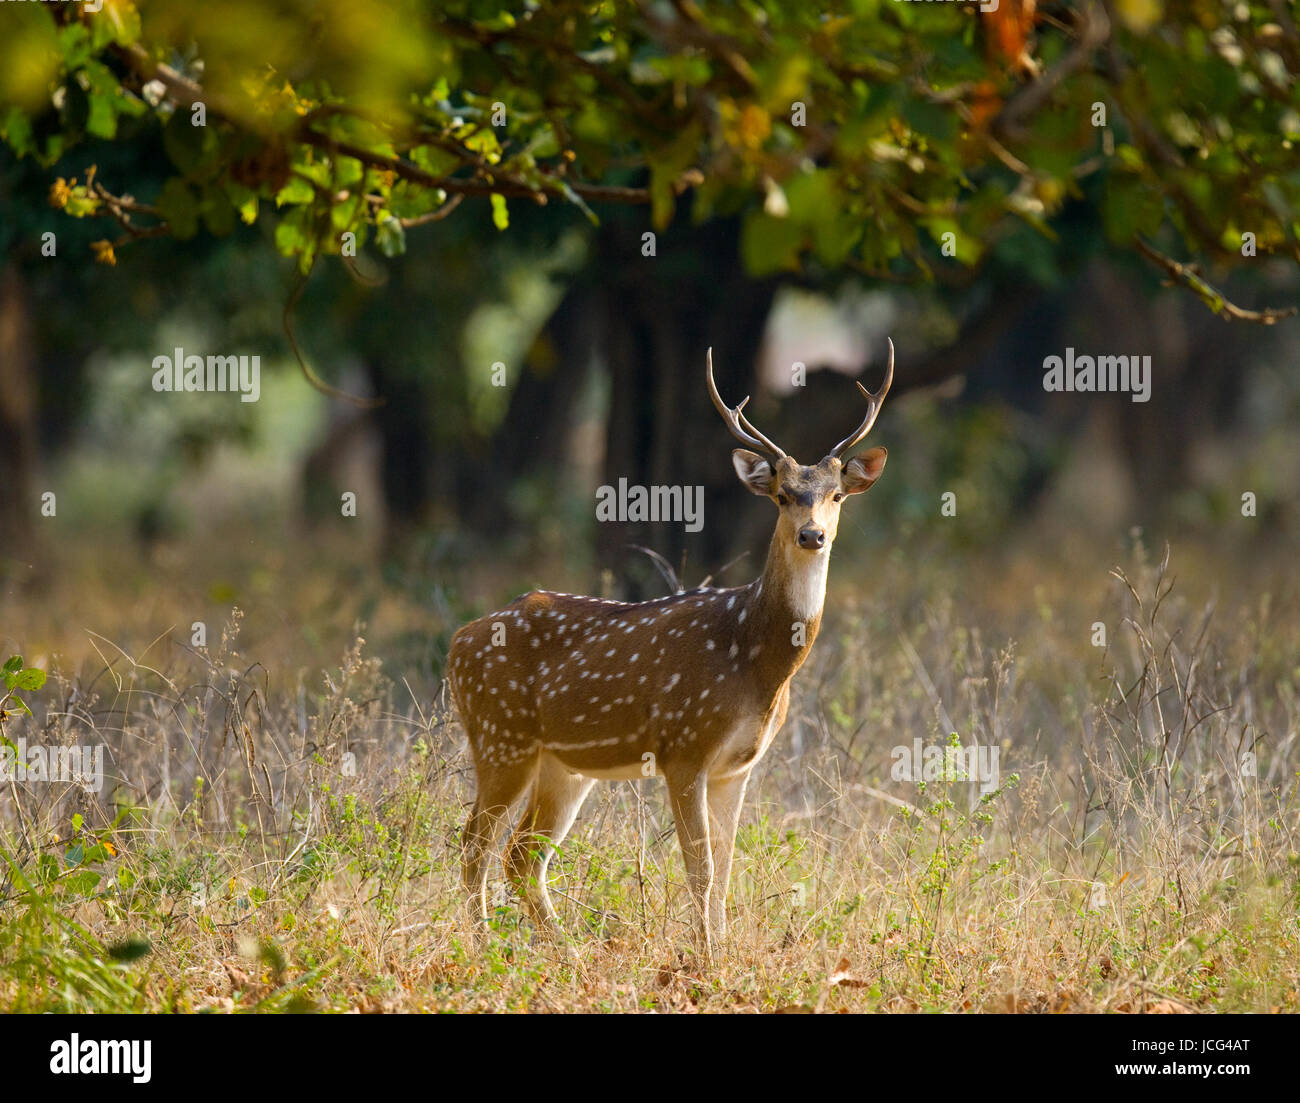 Cerf avec de belles cornes debout dans la jungle dans la nature. Inde. Parc national. Banque D'Images